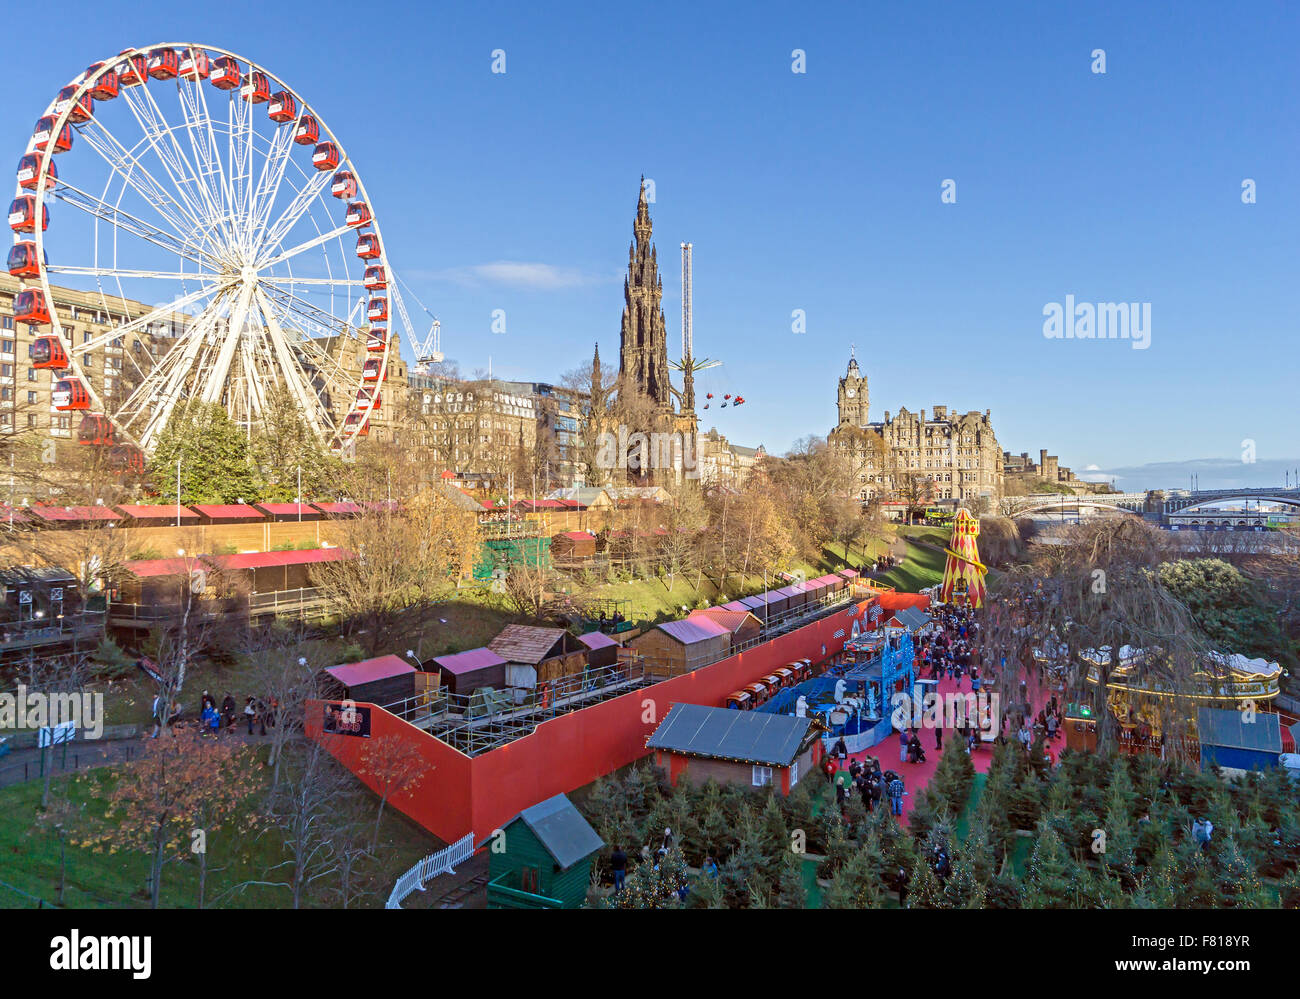 Edinburgh mercatino di Natale 2015 con bancarelle del mercato Grande Ruota e Star Flyer come pure Santa terra in basso a destra Foto Stock